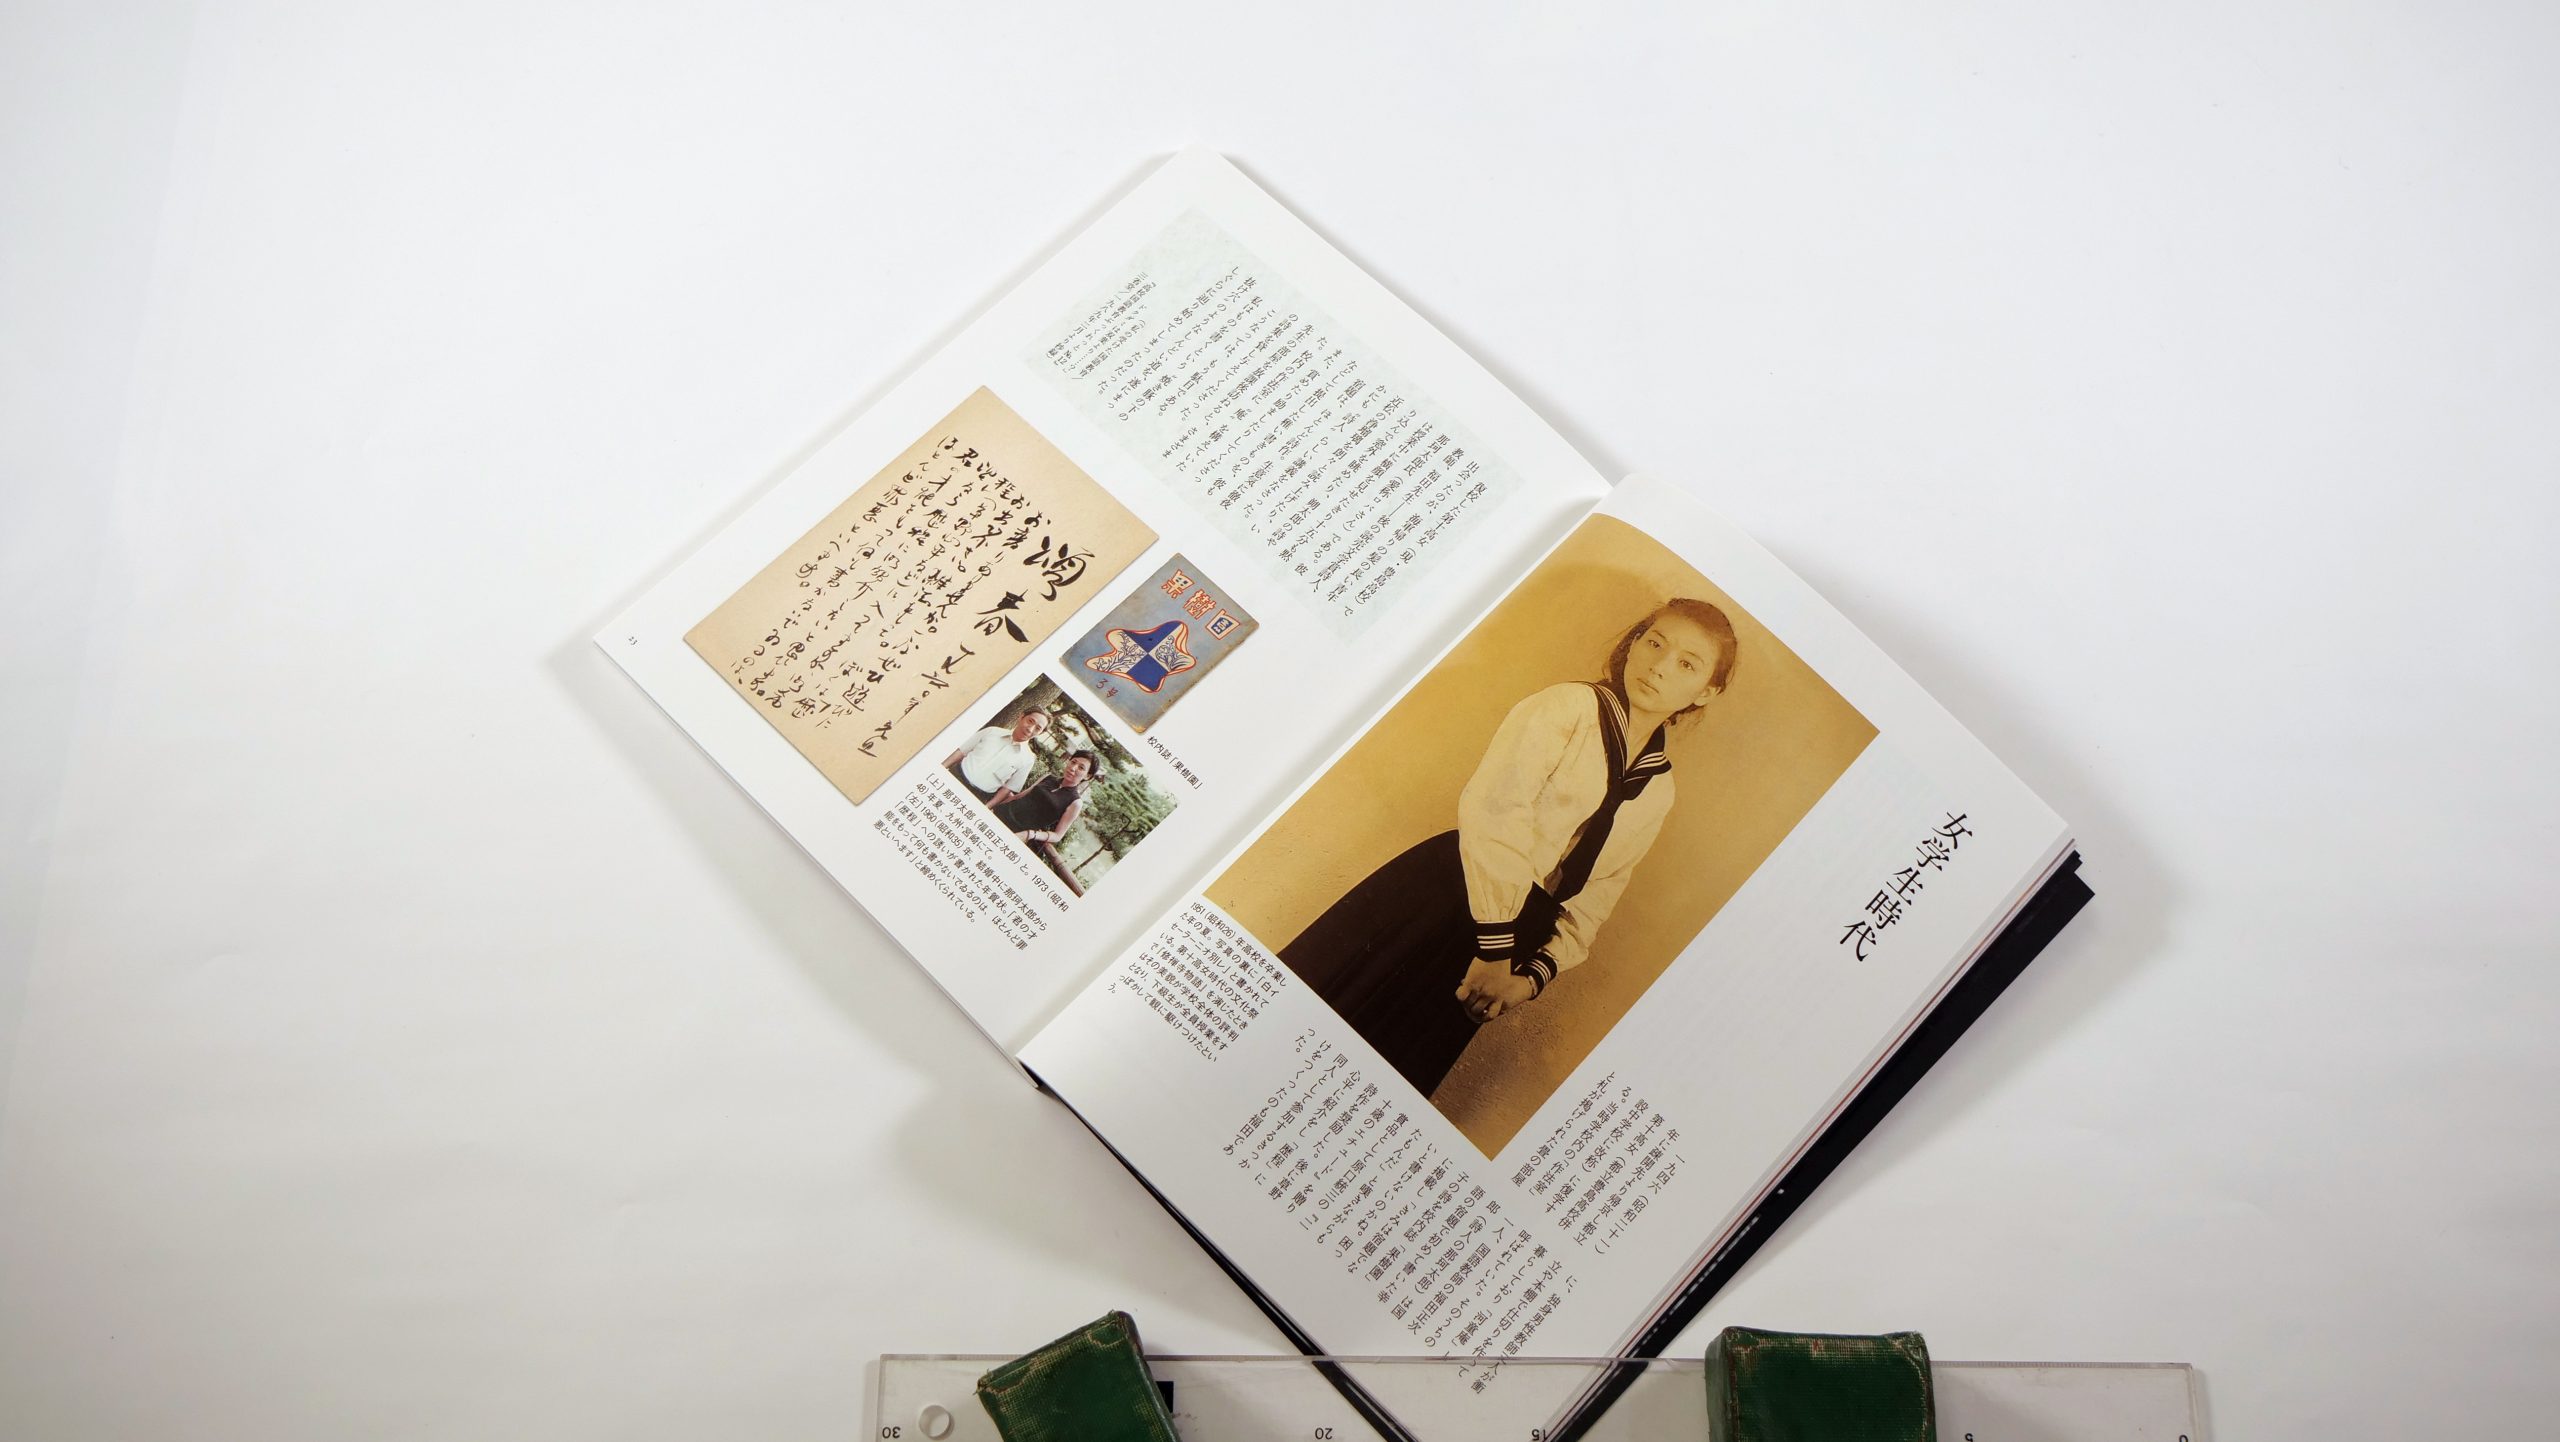 透明でみずみずしい言葉と圧倒的カリスマ性で現代詩をリードし、愛のために歌い続けた吉原幸子という詩人の作品と生涯 - 東京印書館 |  写真集・展覧会図録・絵本・その他印刷物の企画制作| TOKYO INSHOKAN PRINTING CO.